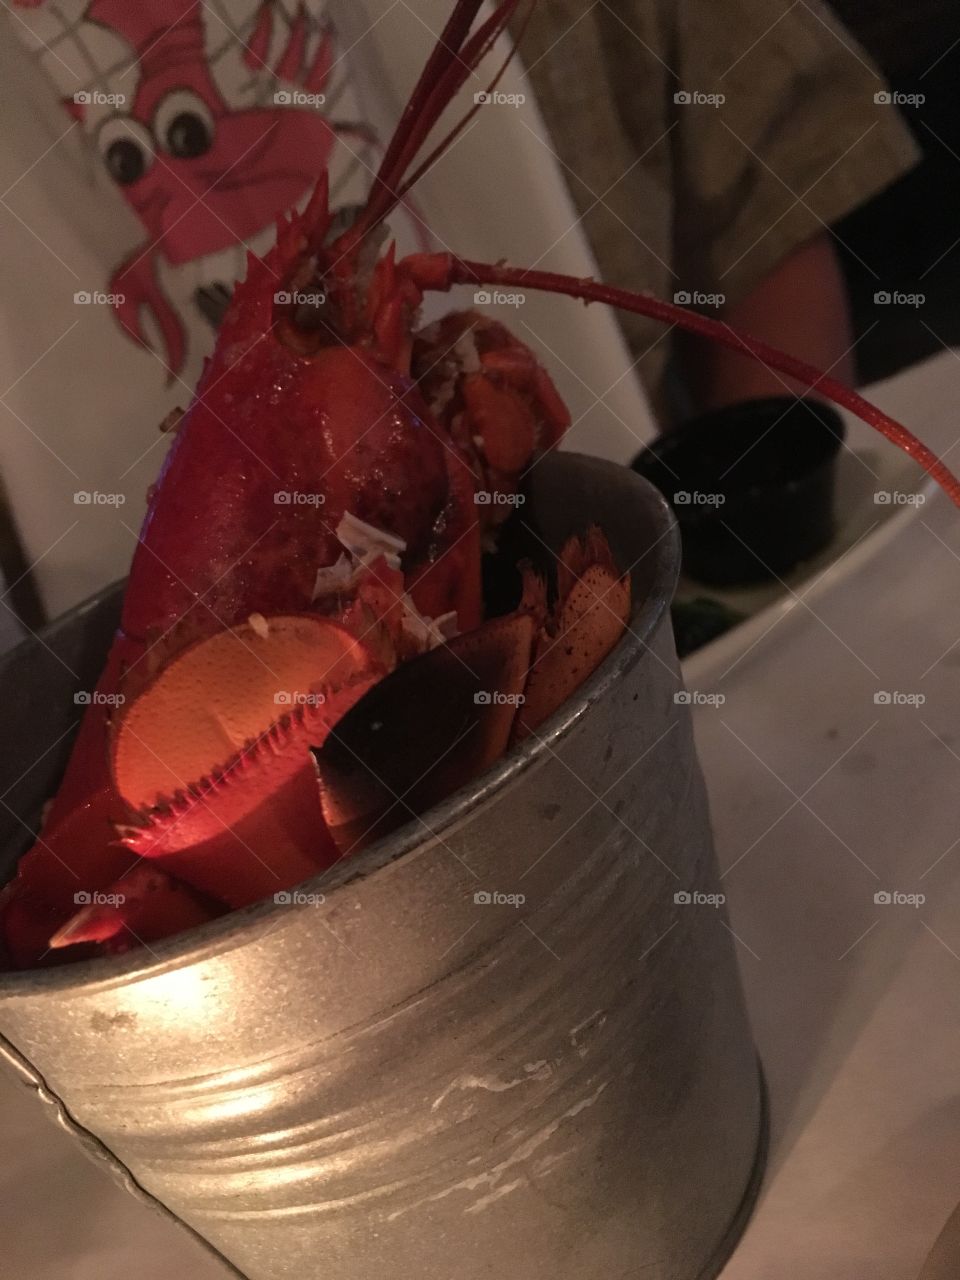 Lobster in a bucket